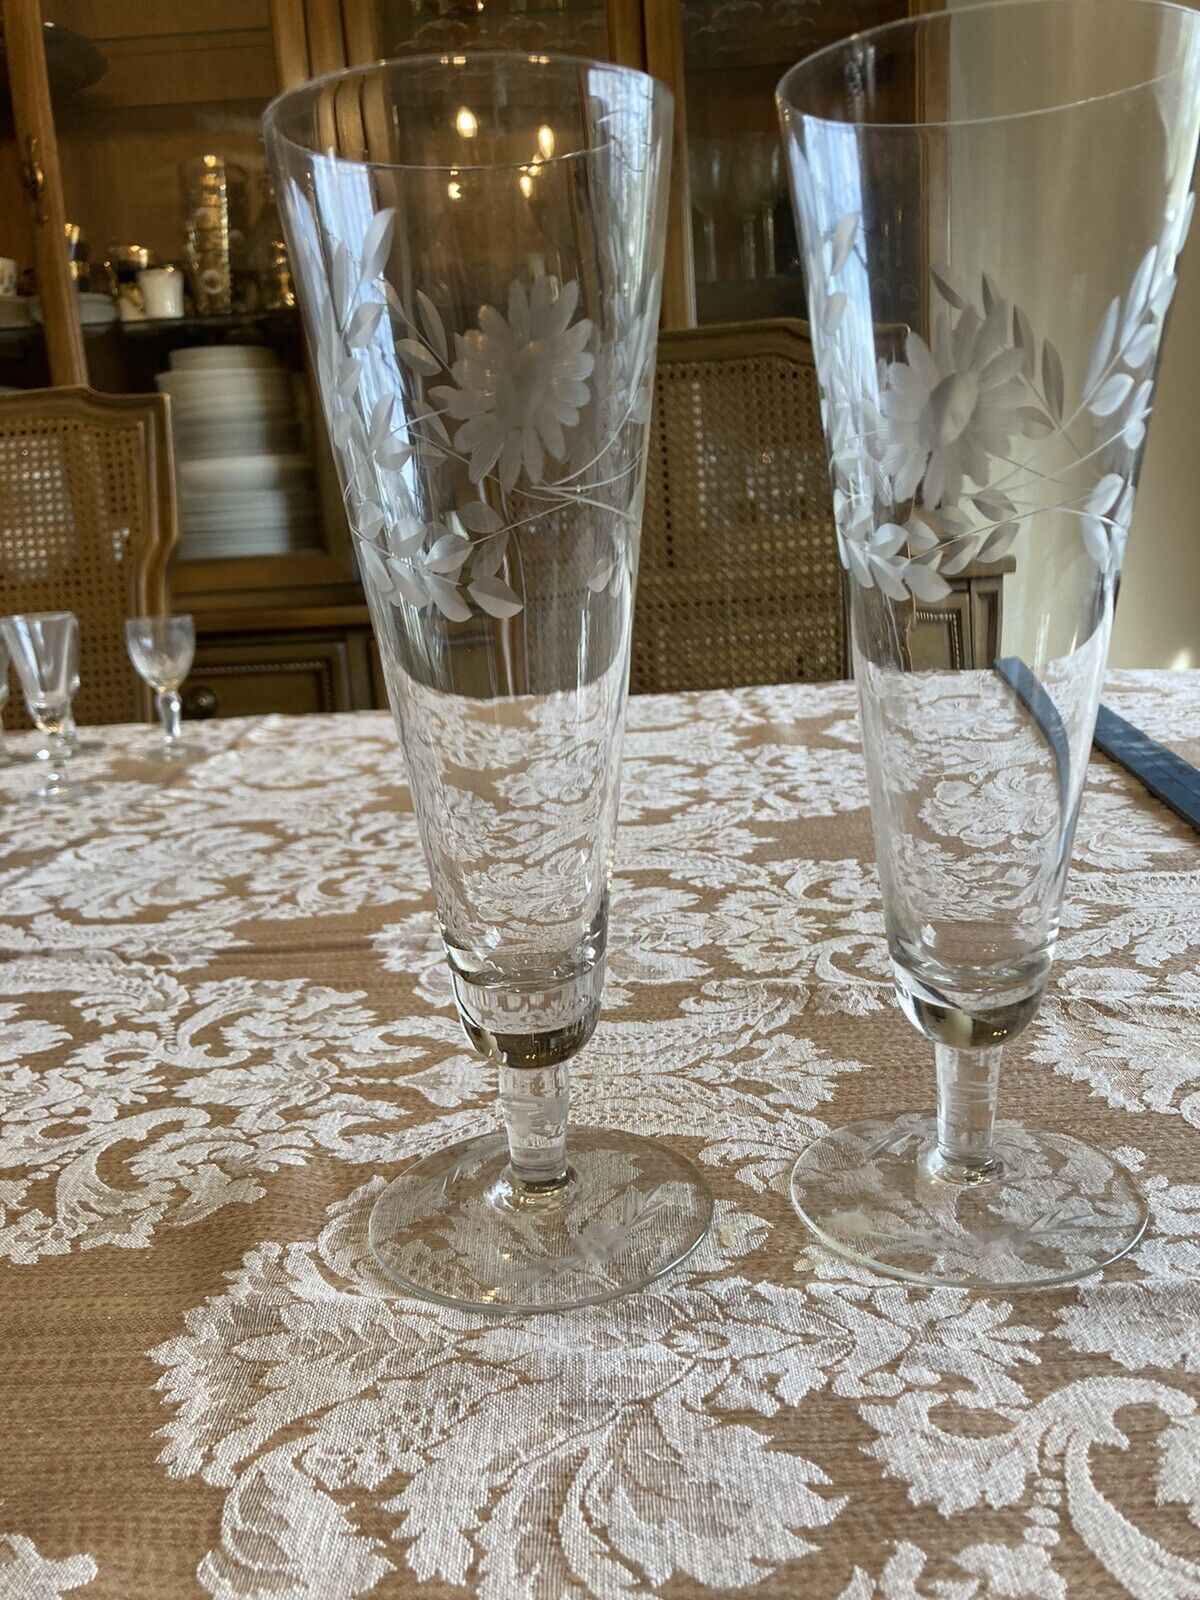 2 Vintage Etched Glass Pilsner Beer Glasses Floral Barware Cocktail